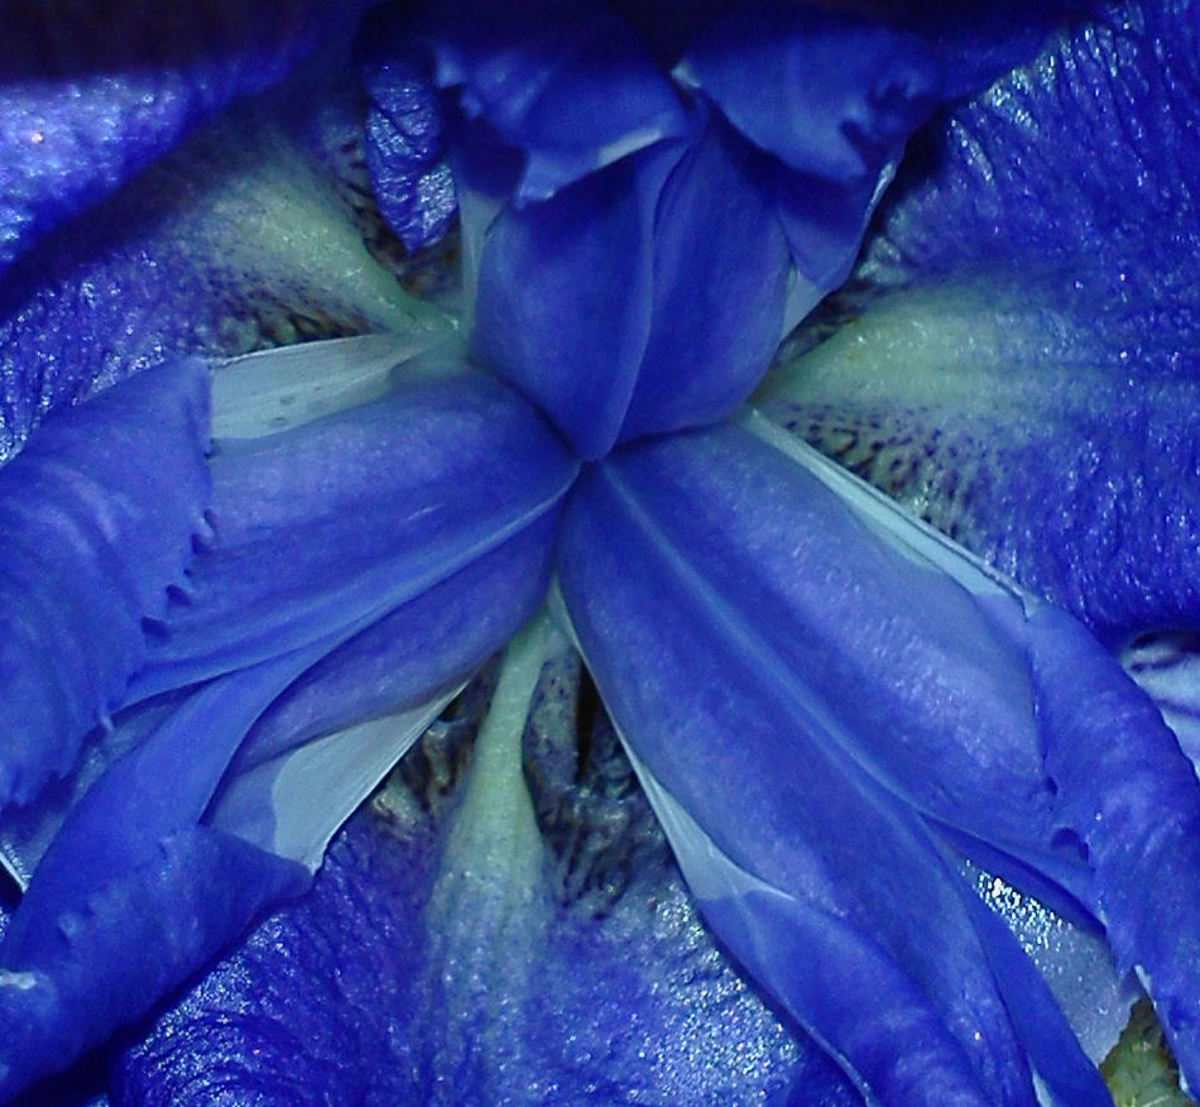 Deep inside a gorgeous blue iris.